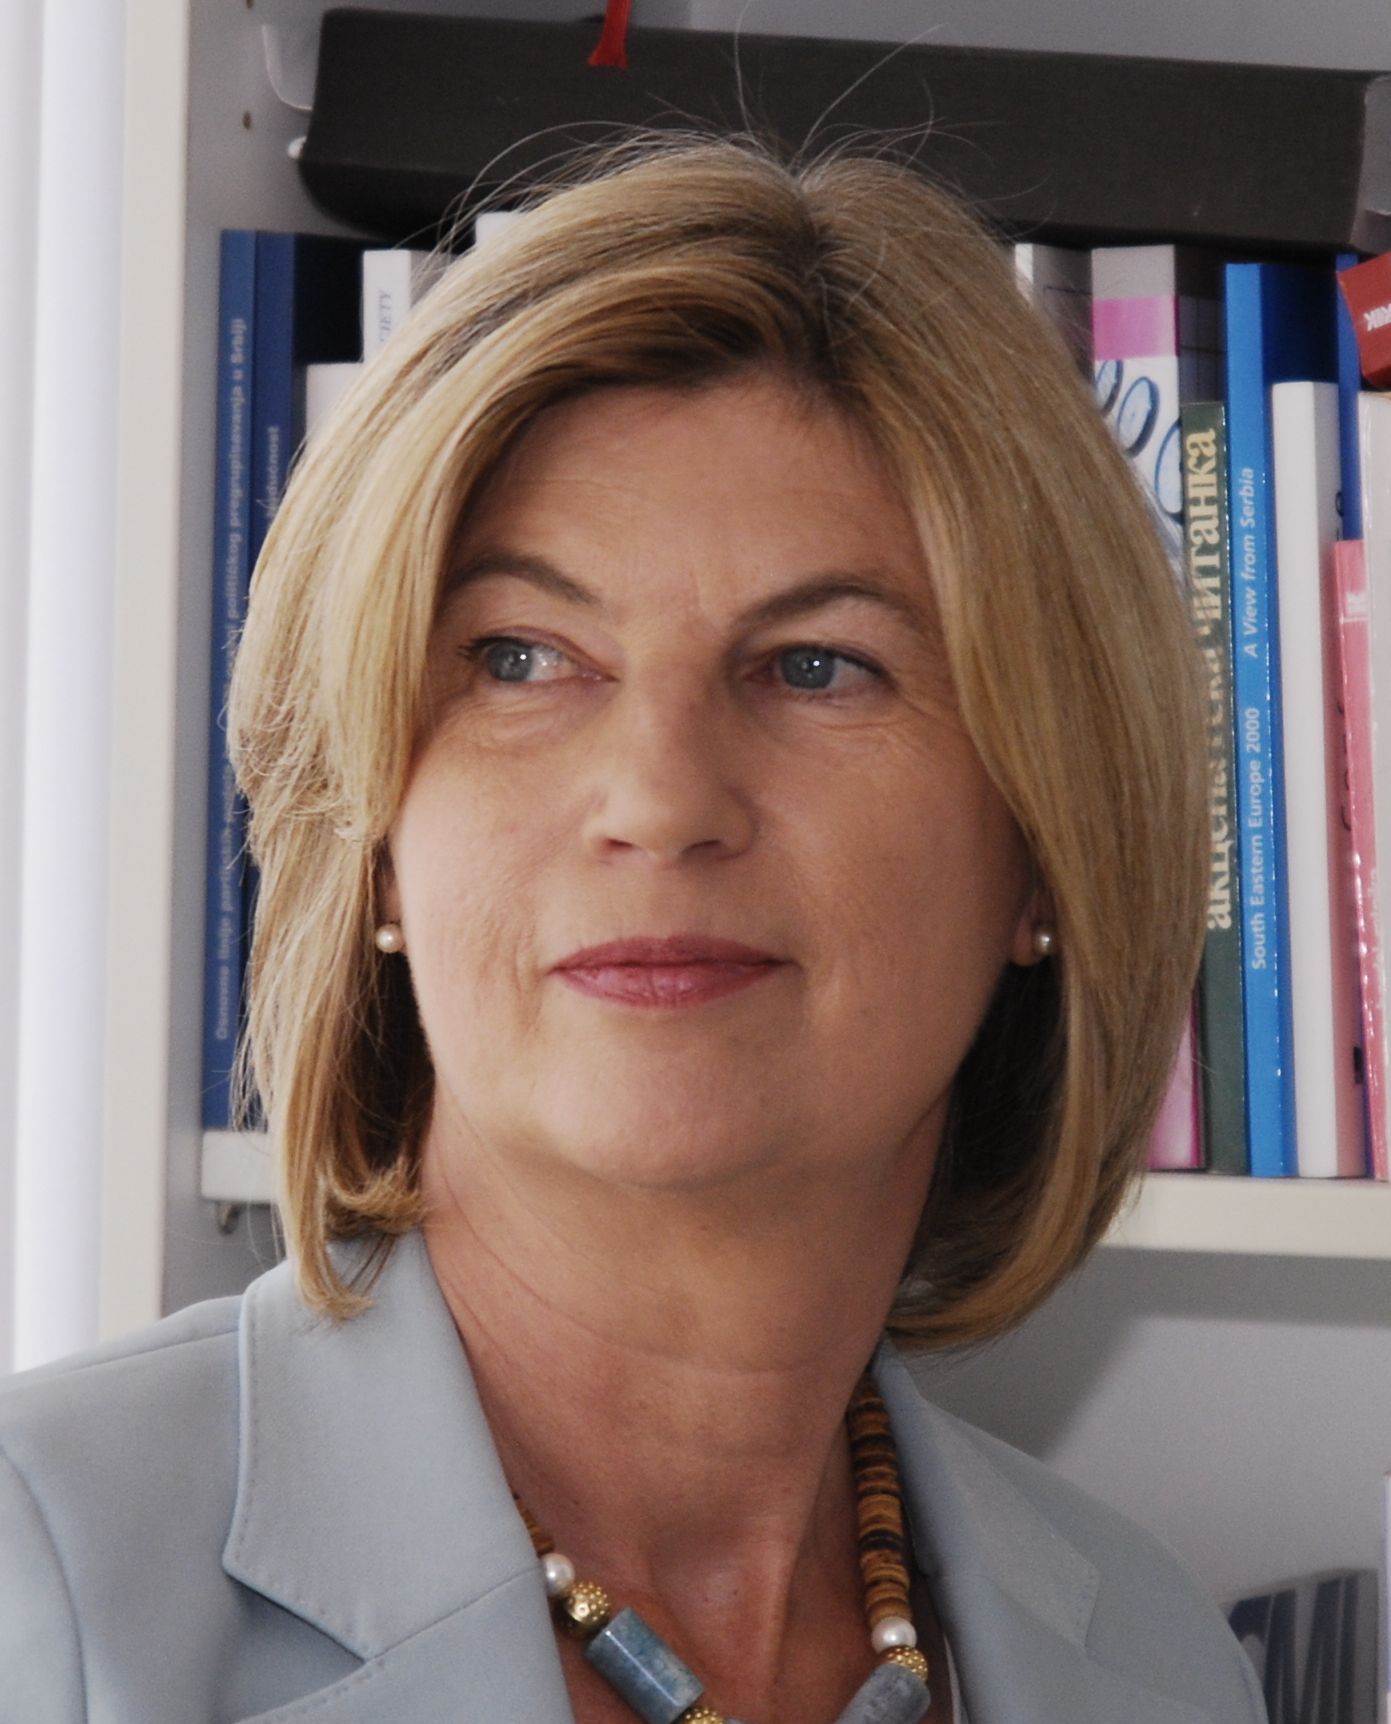 Profile image of Prof. Marie-Janine Calic